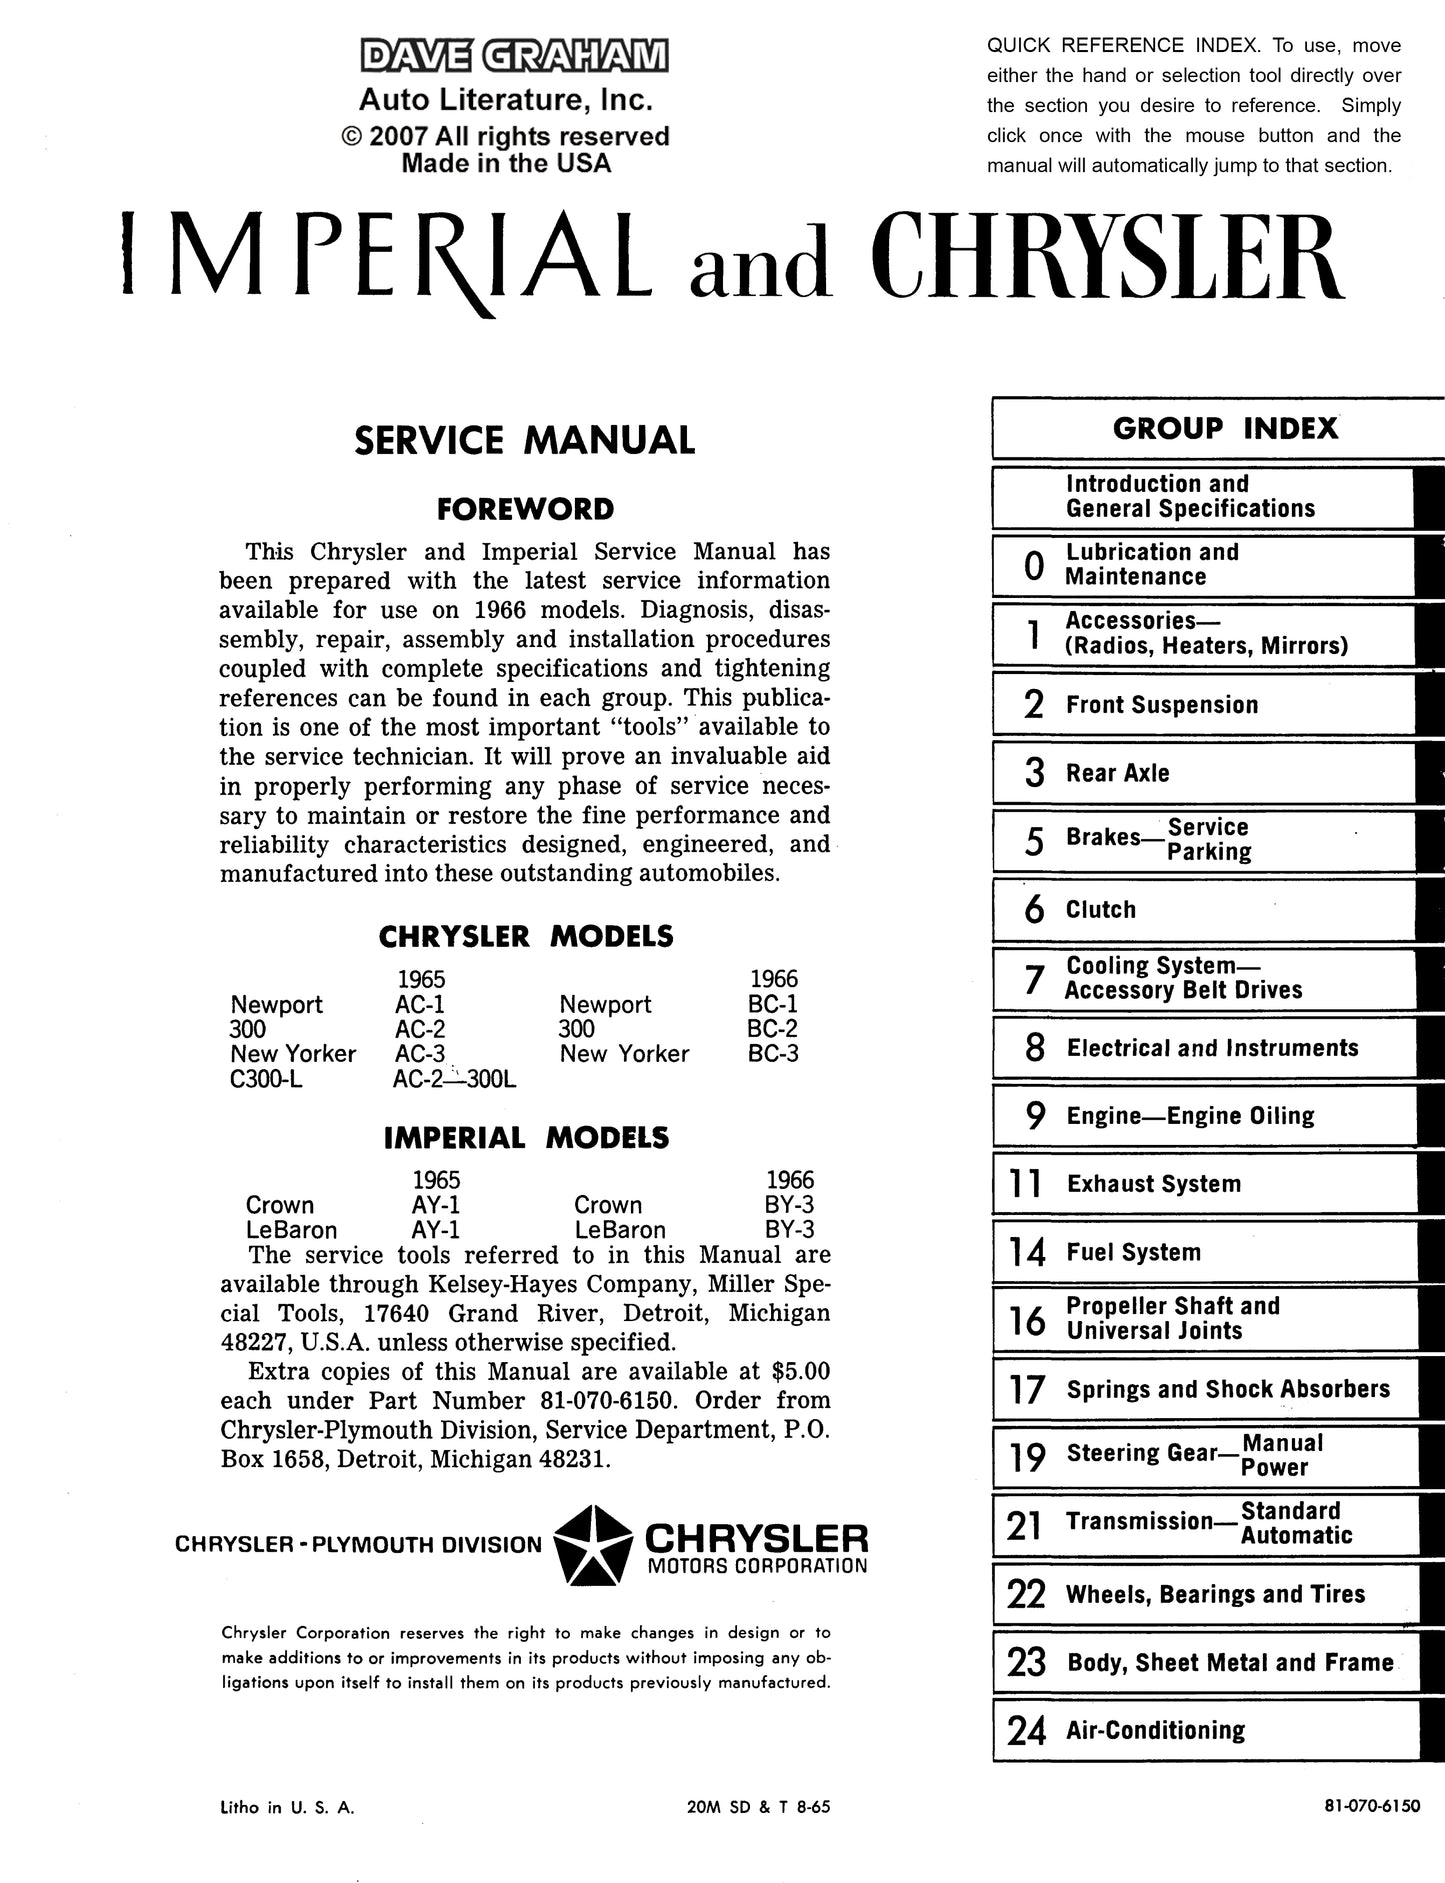 1966 Chrysler Shop Manual - All Models